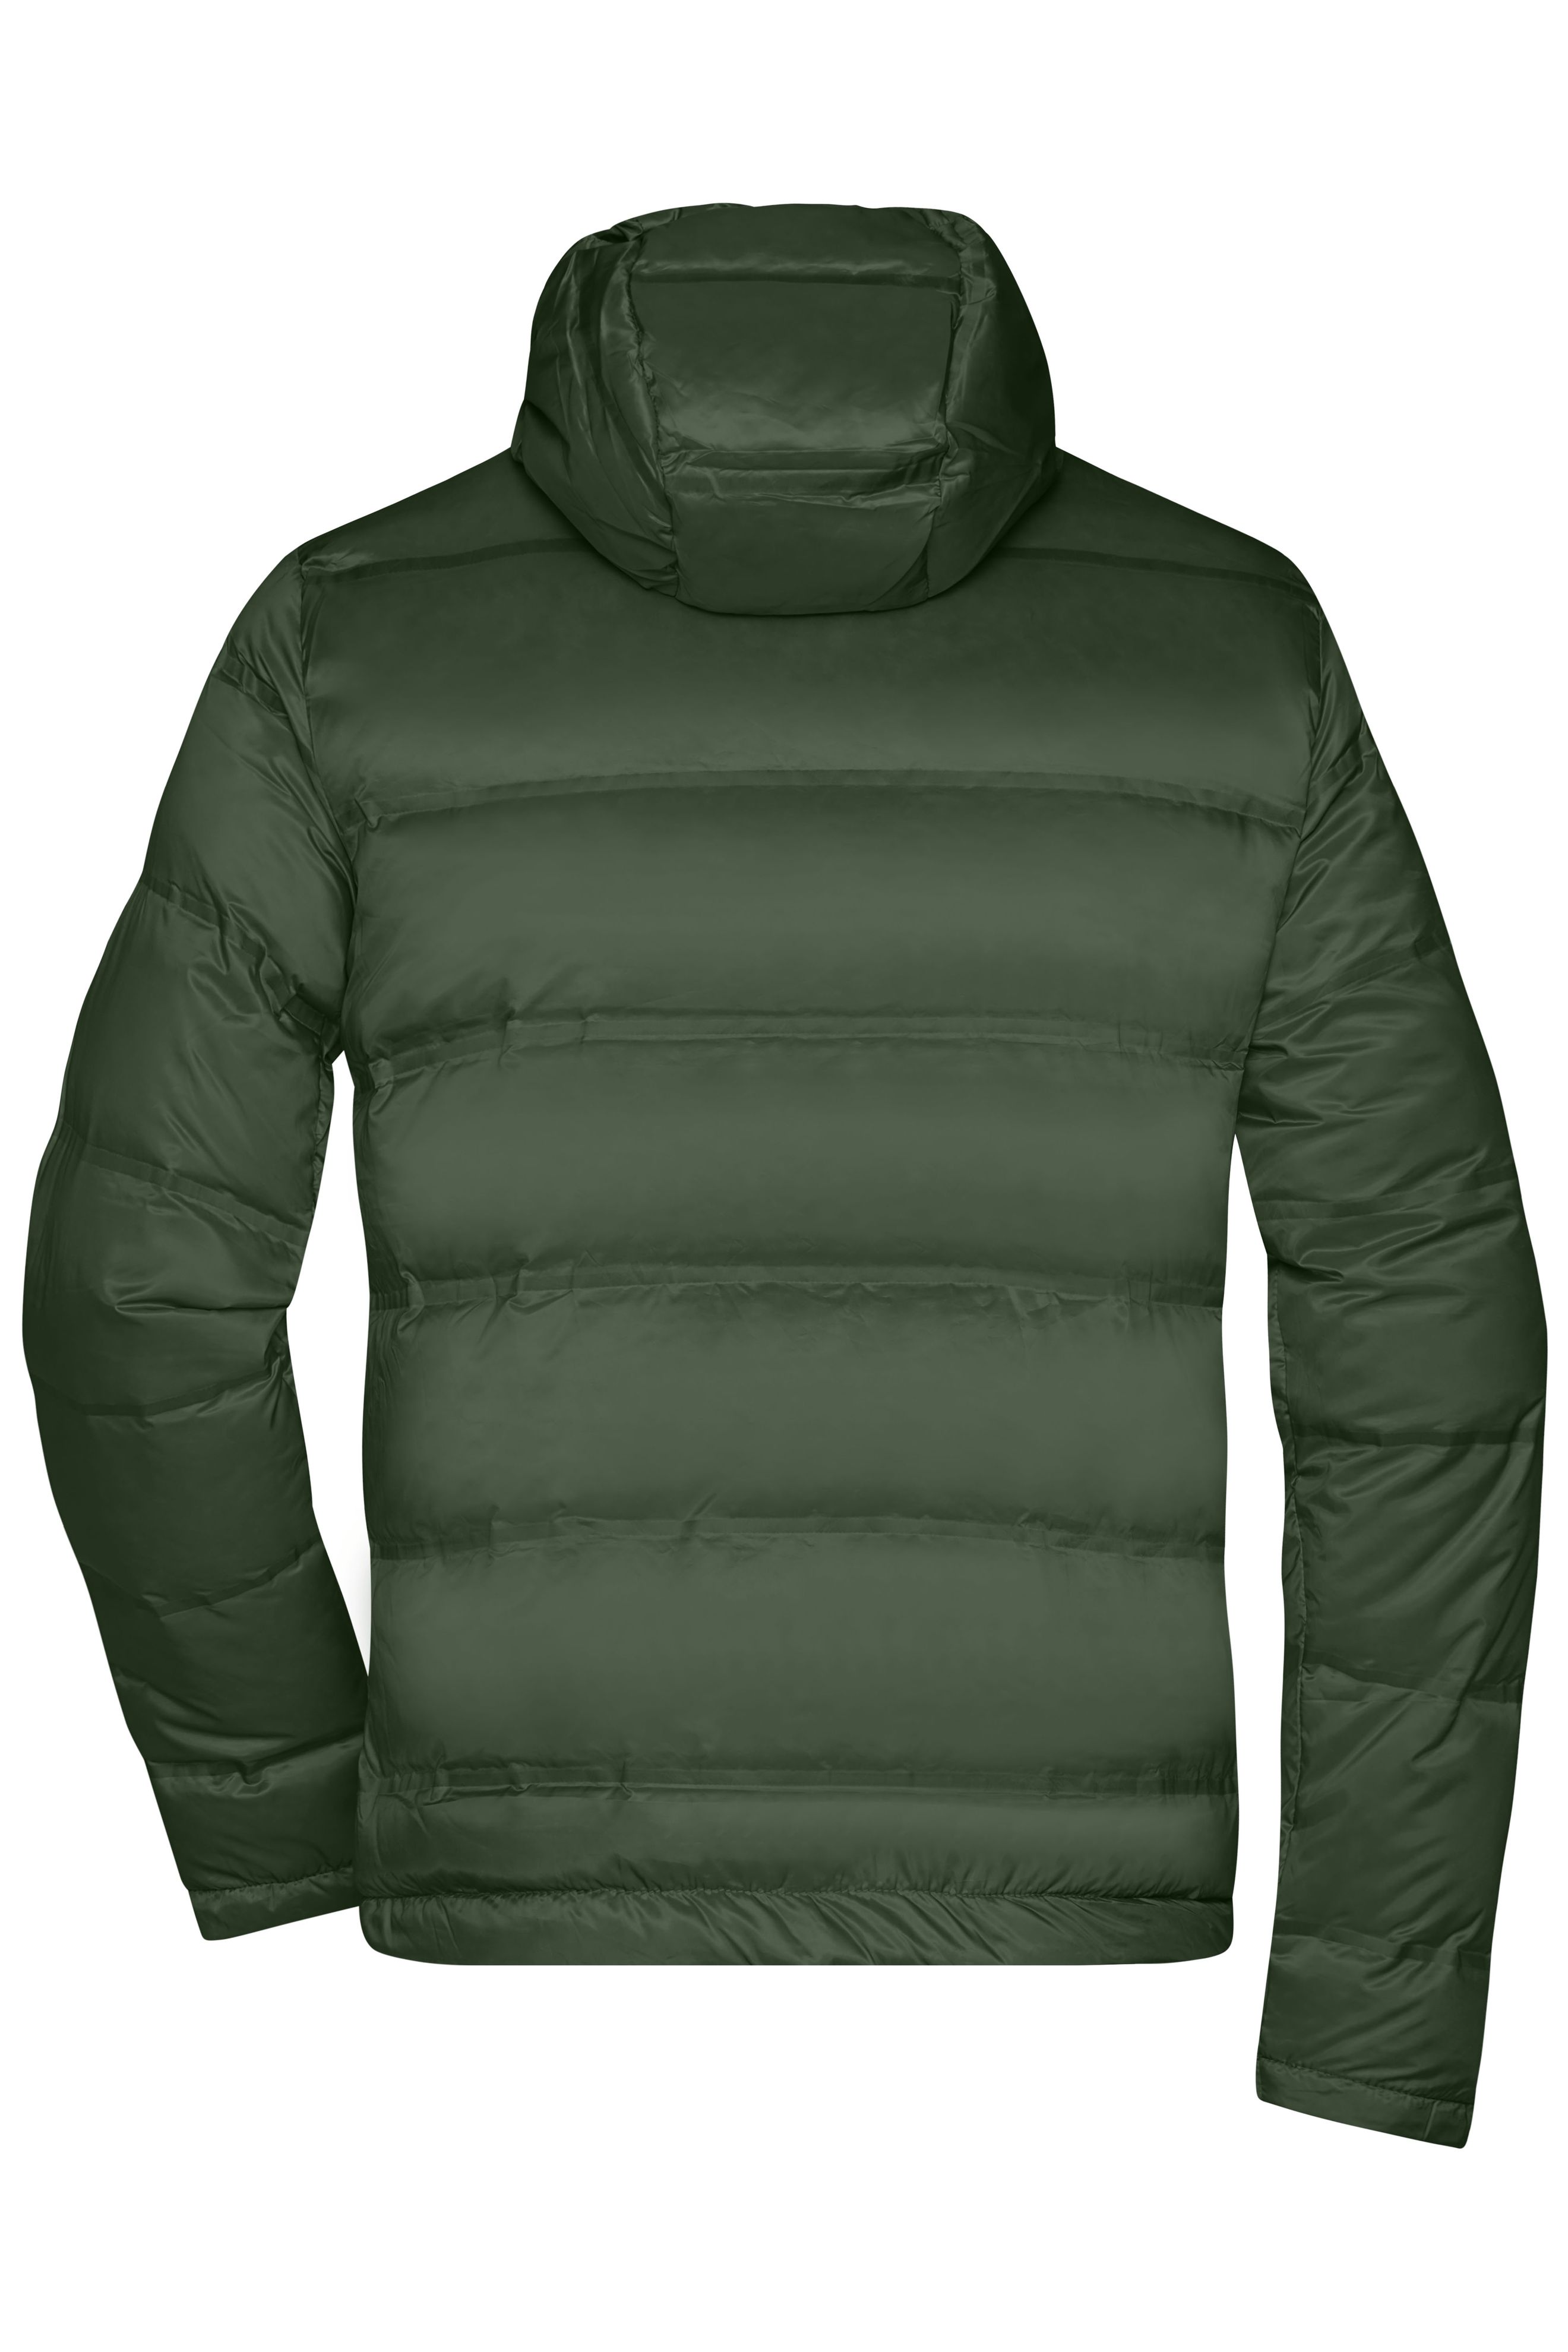 Men's Hooded Down Jacket JN1152 Daunenjacke mit Kapuze in neuem Design, Steppung der Jacke ist geklebt und nicht genäht